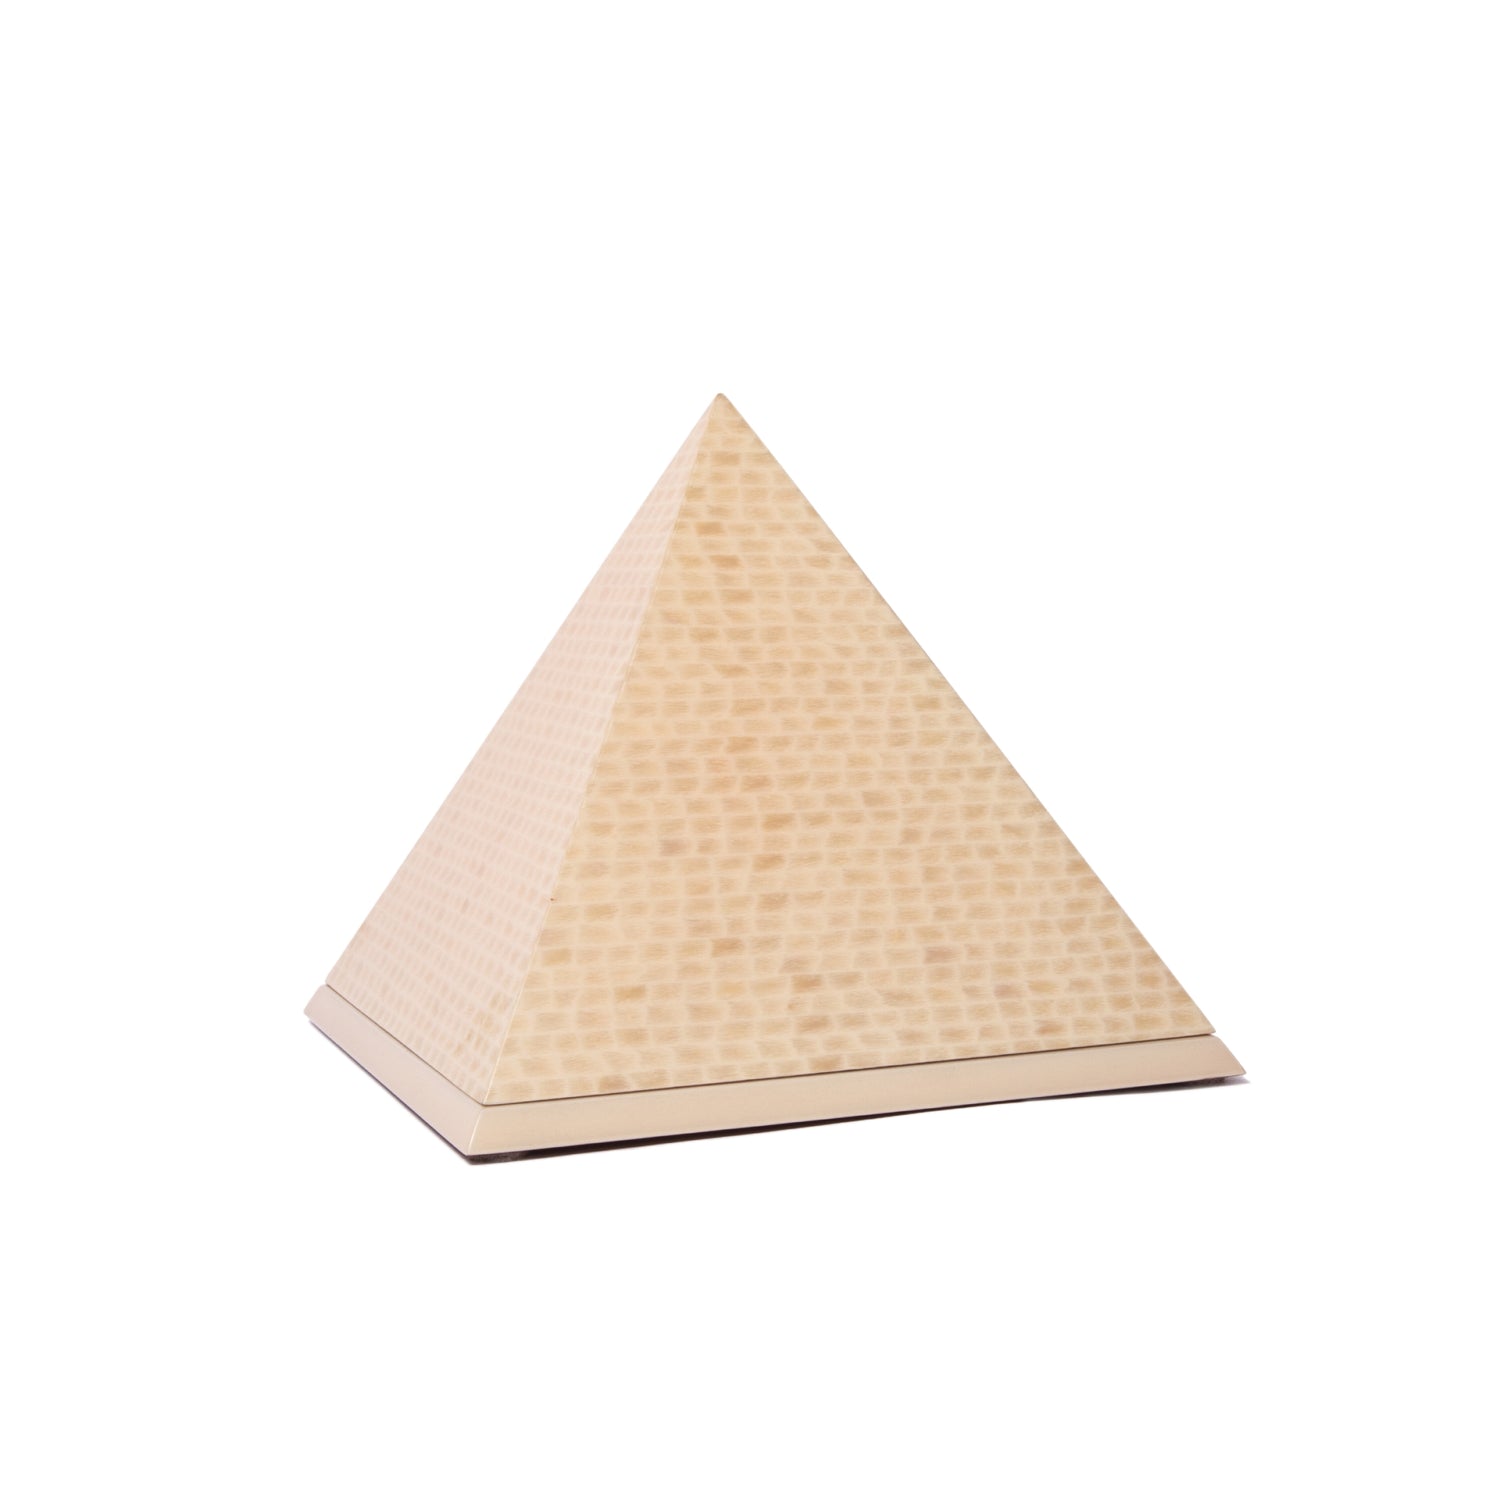 The Pyramid in Cream